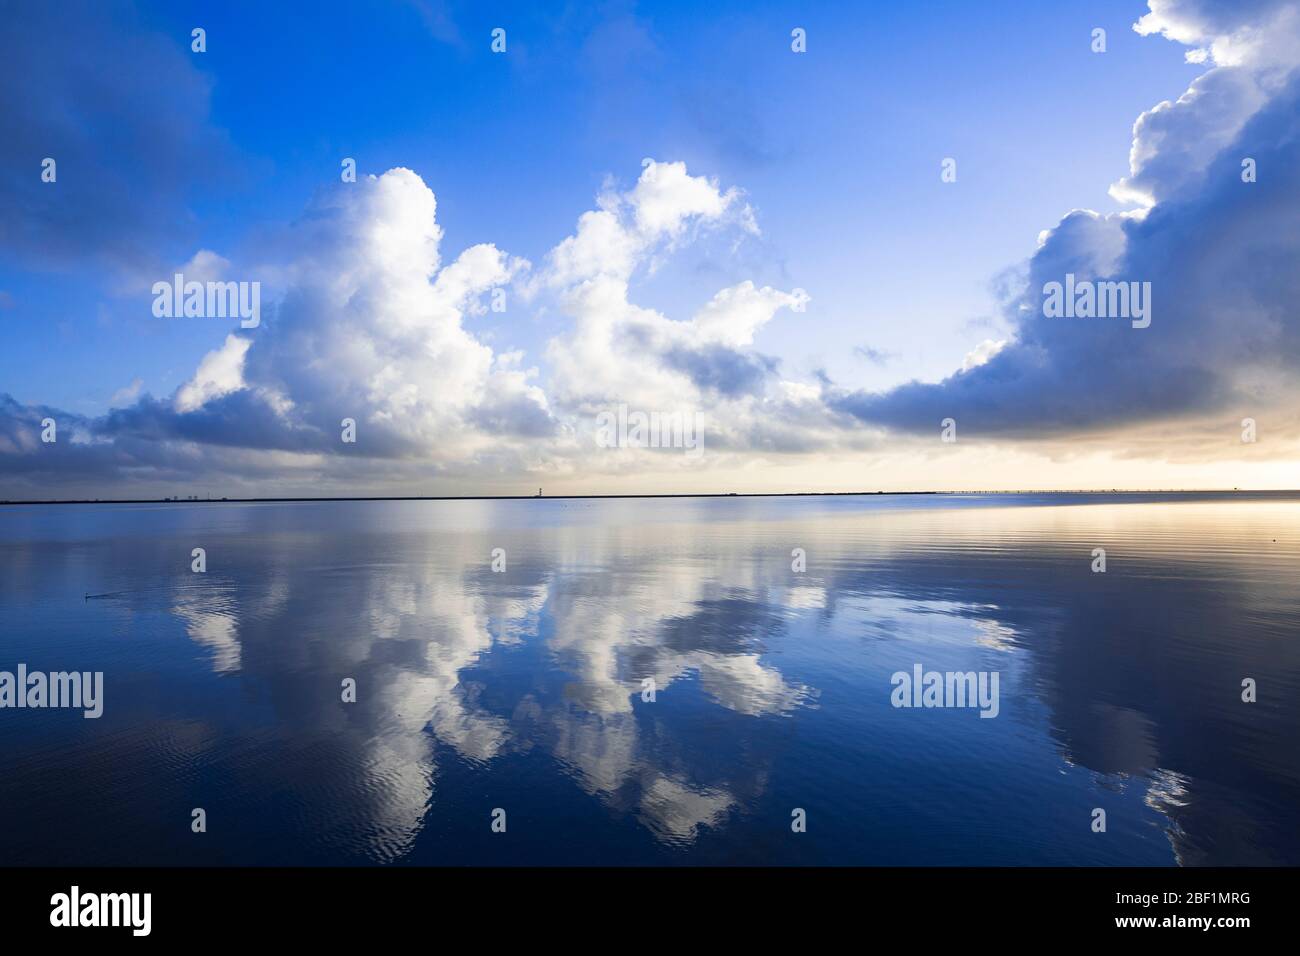 Magnifique paysage de la baie de San Francisco avec des nuages blancs sur fond bleu ciel et réflexion sur la mer Banque D'Images